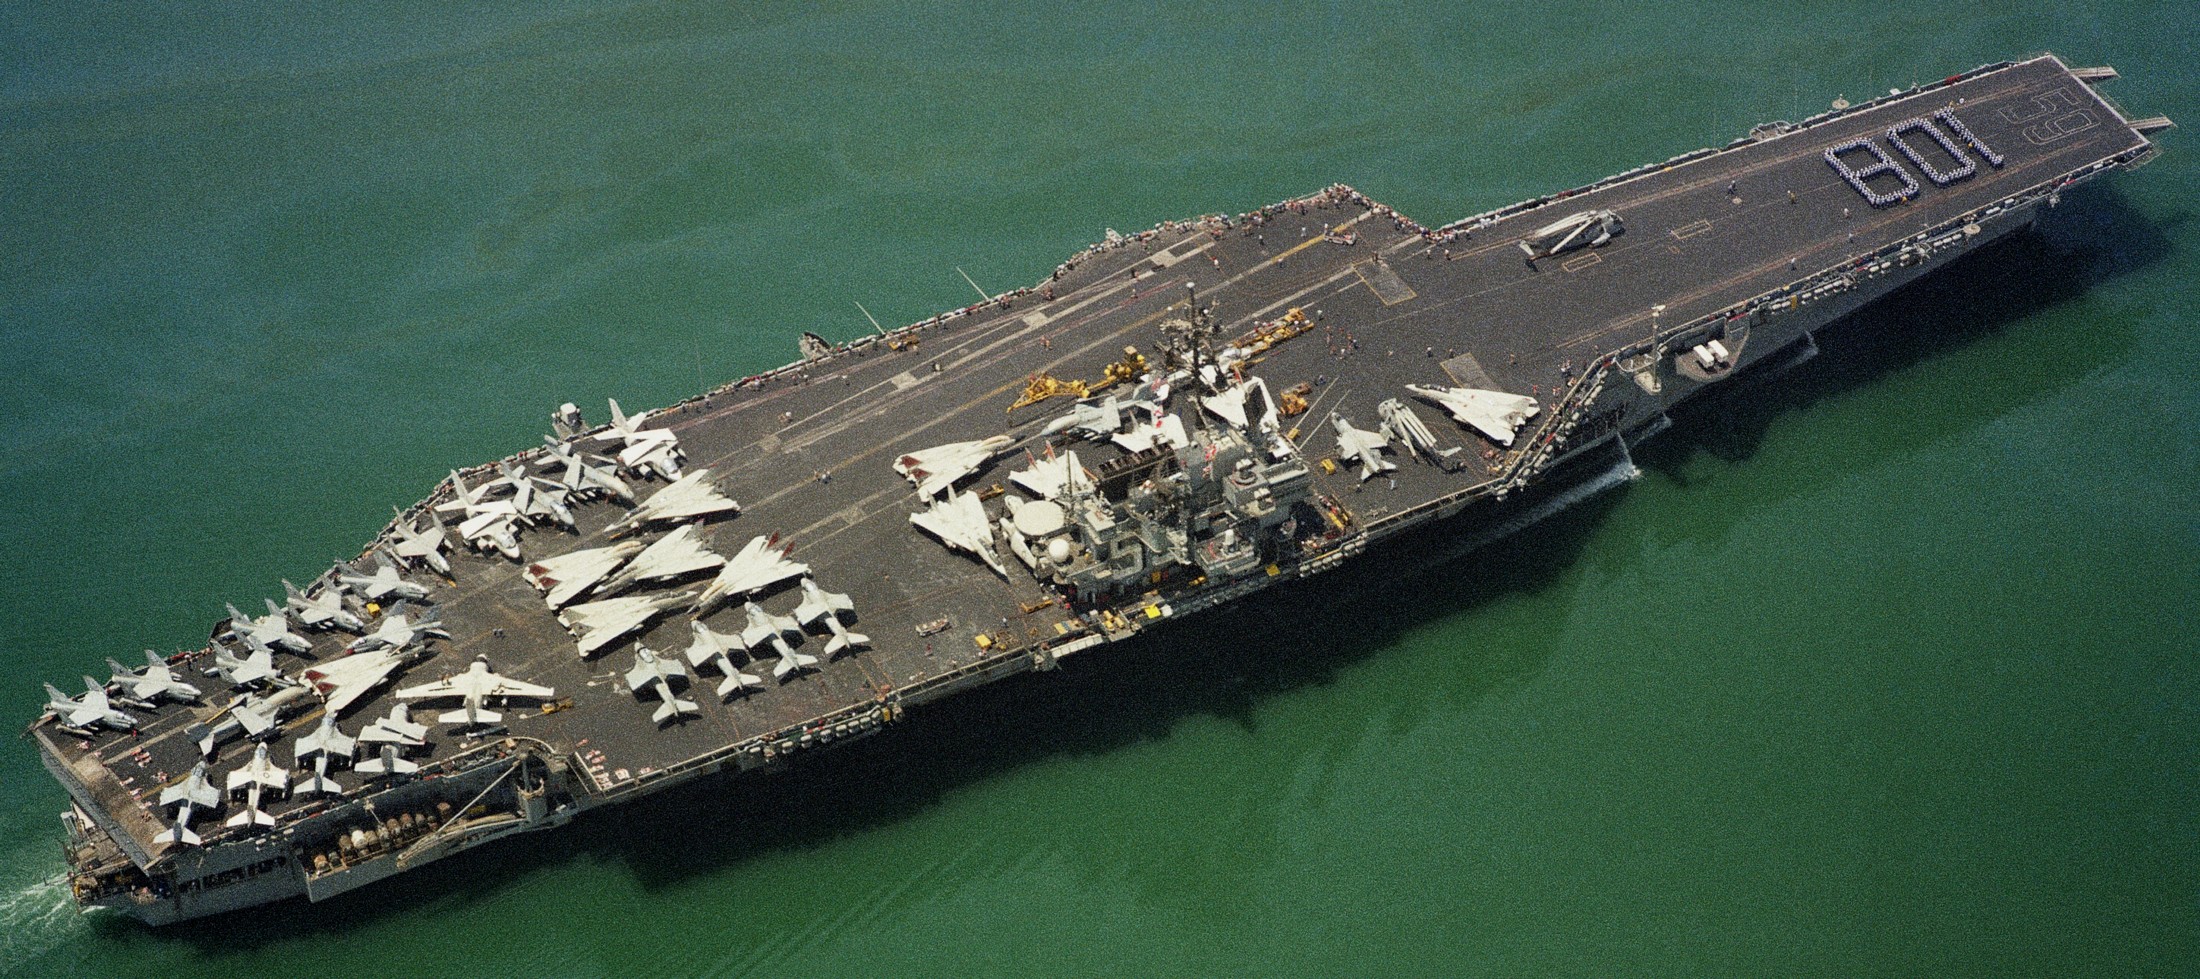 cv-59 uss forrestal aircraft carrier air wing cvw-6 us navy suez canal 1988 79